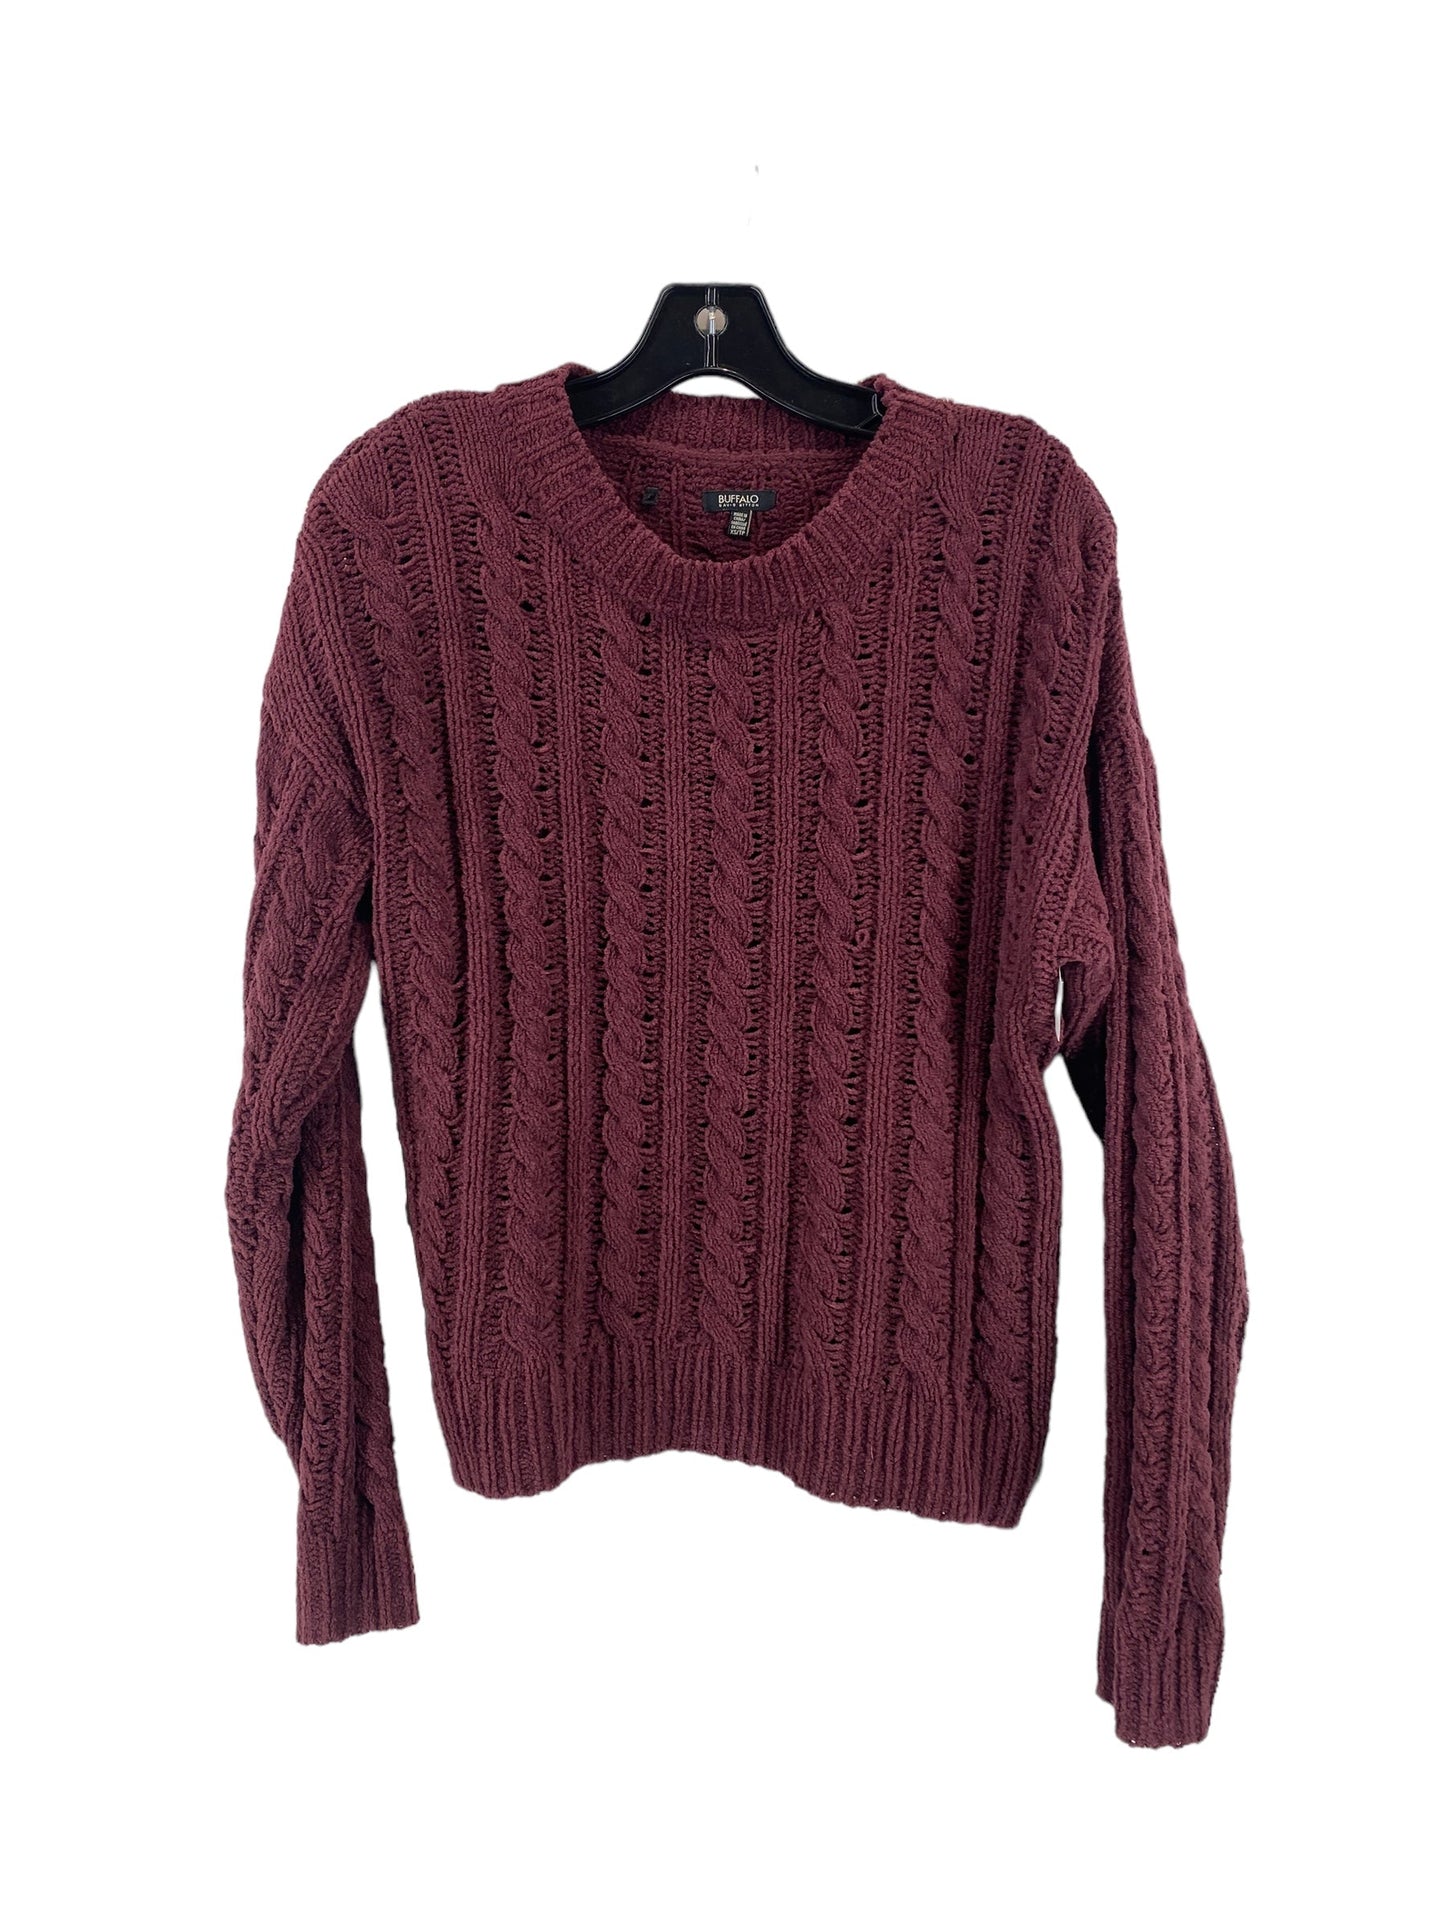 Sweater By Buffalo David Bitton  Size: Xs